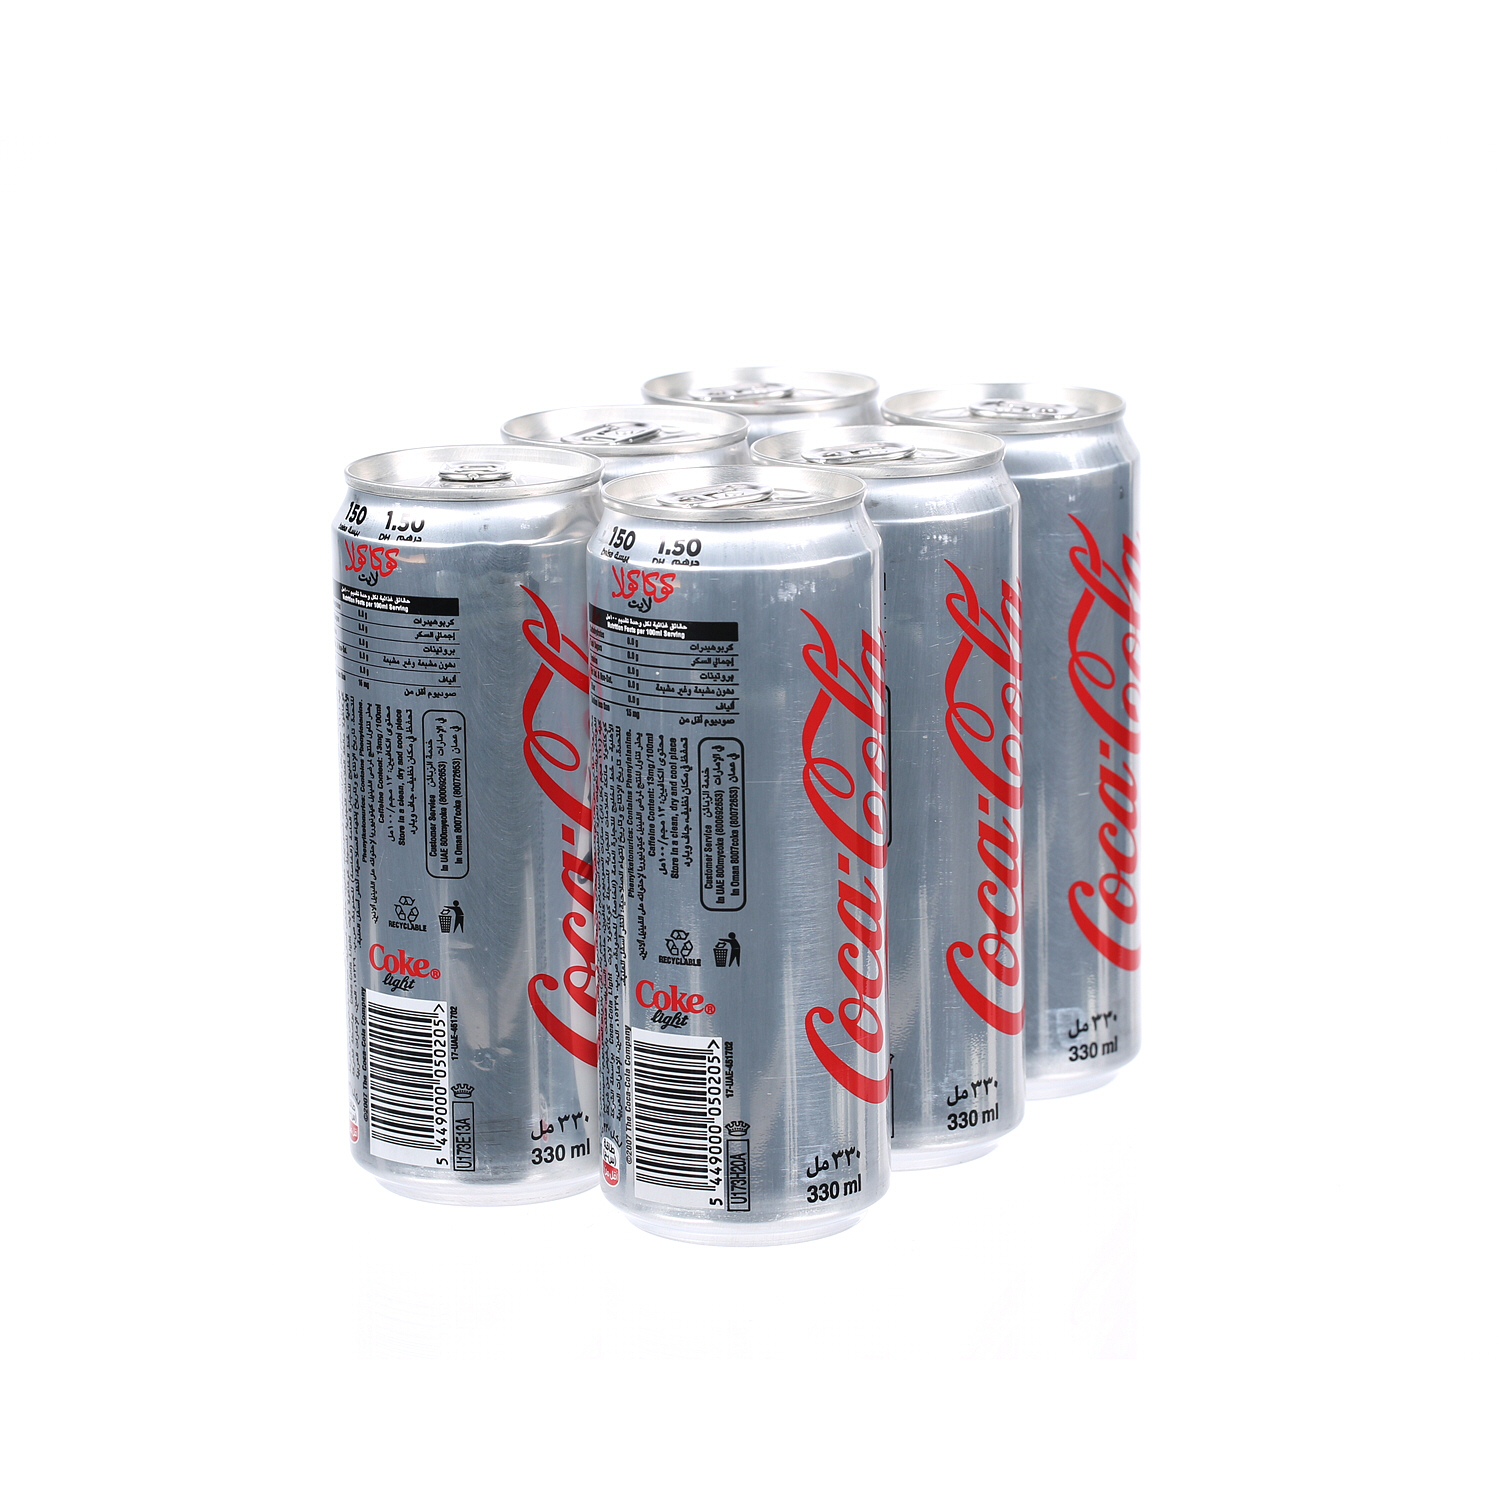 كوكا كولا لايت مشروب غازية 330 مل × 6 عبوات